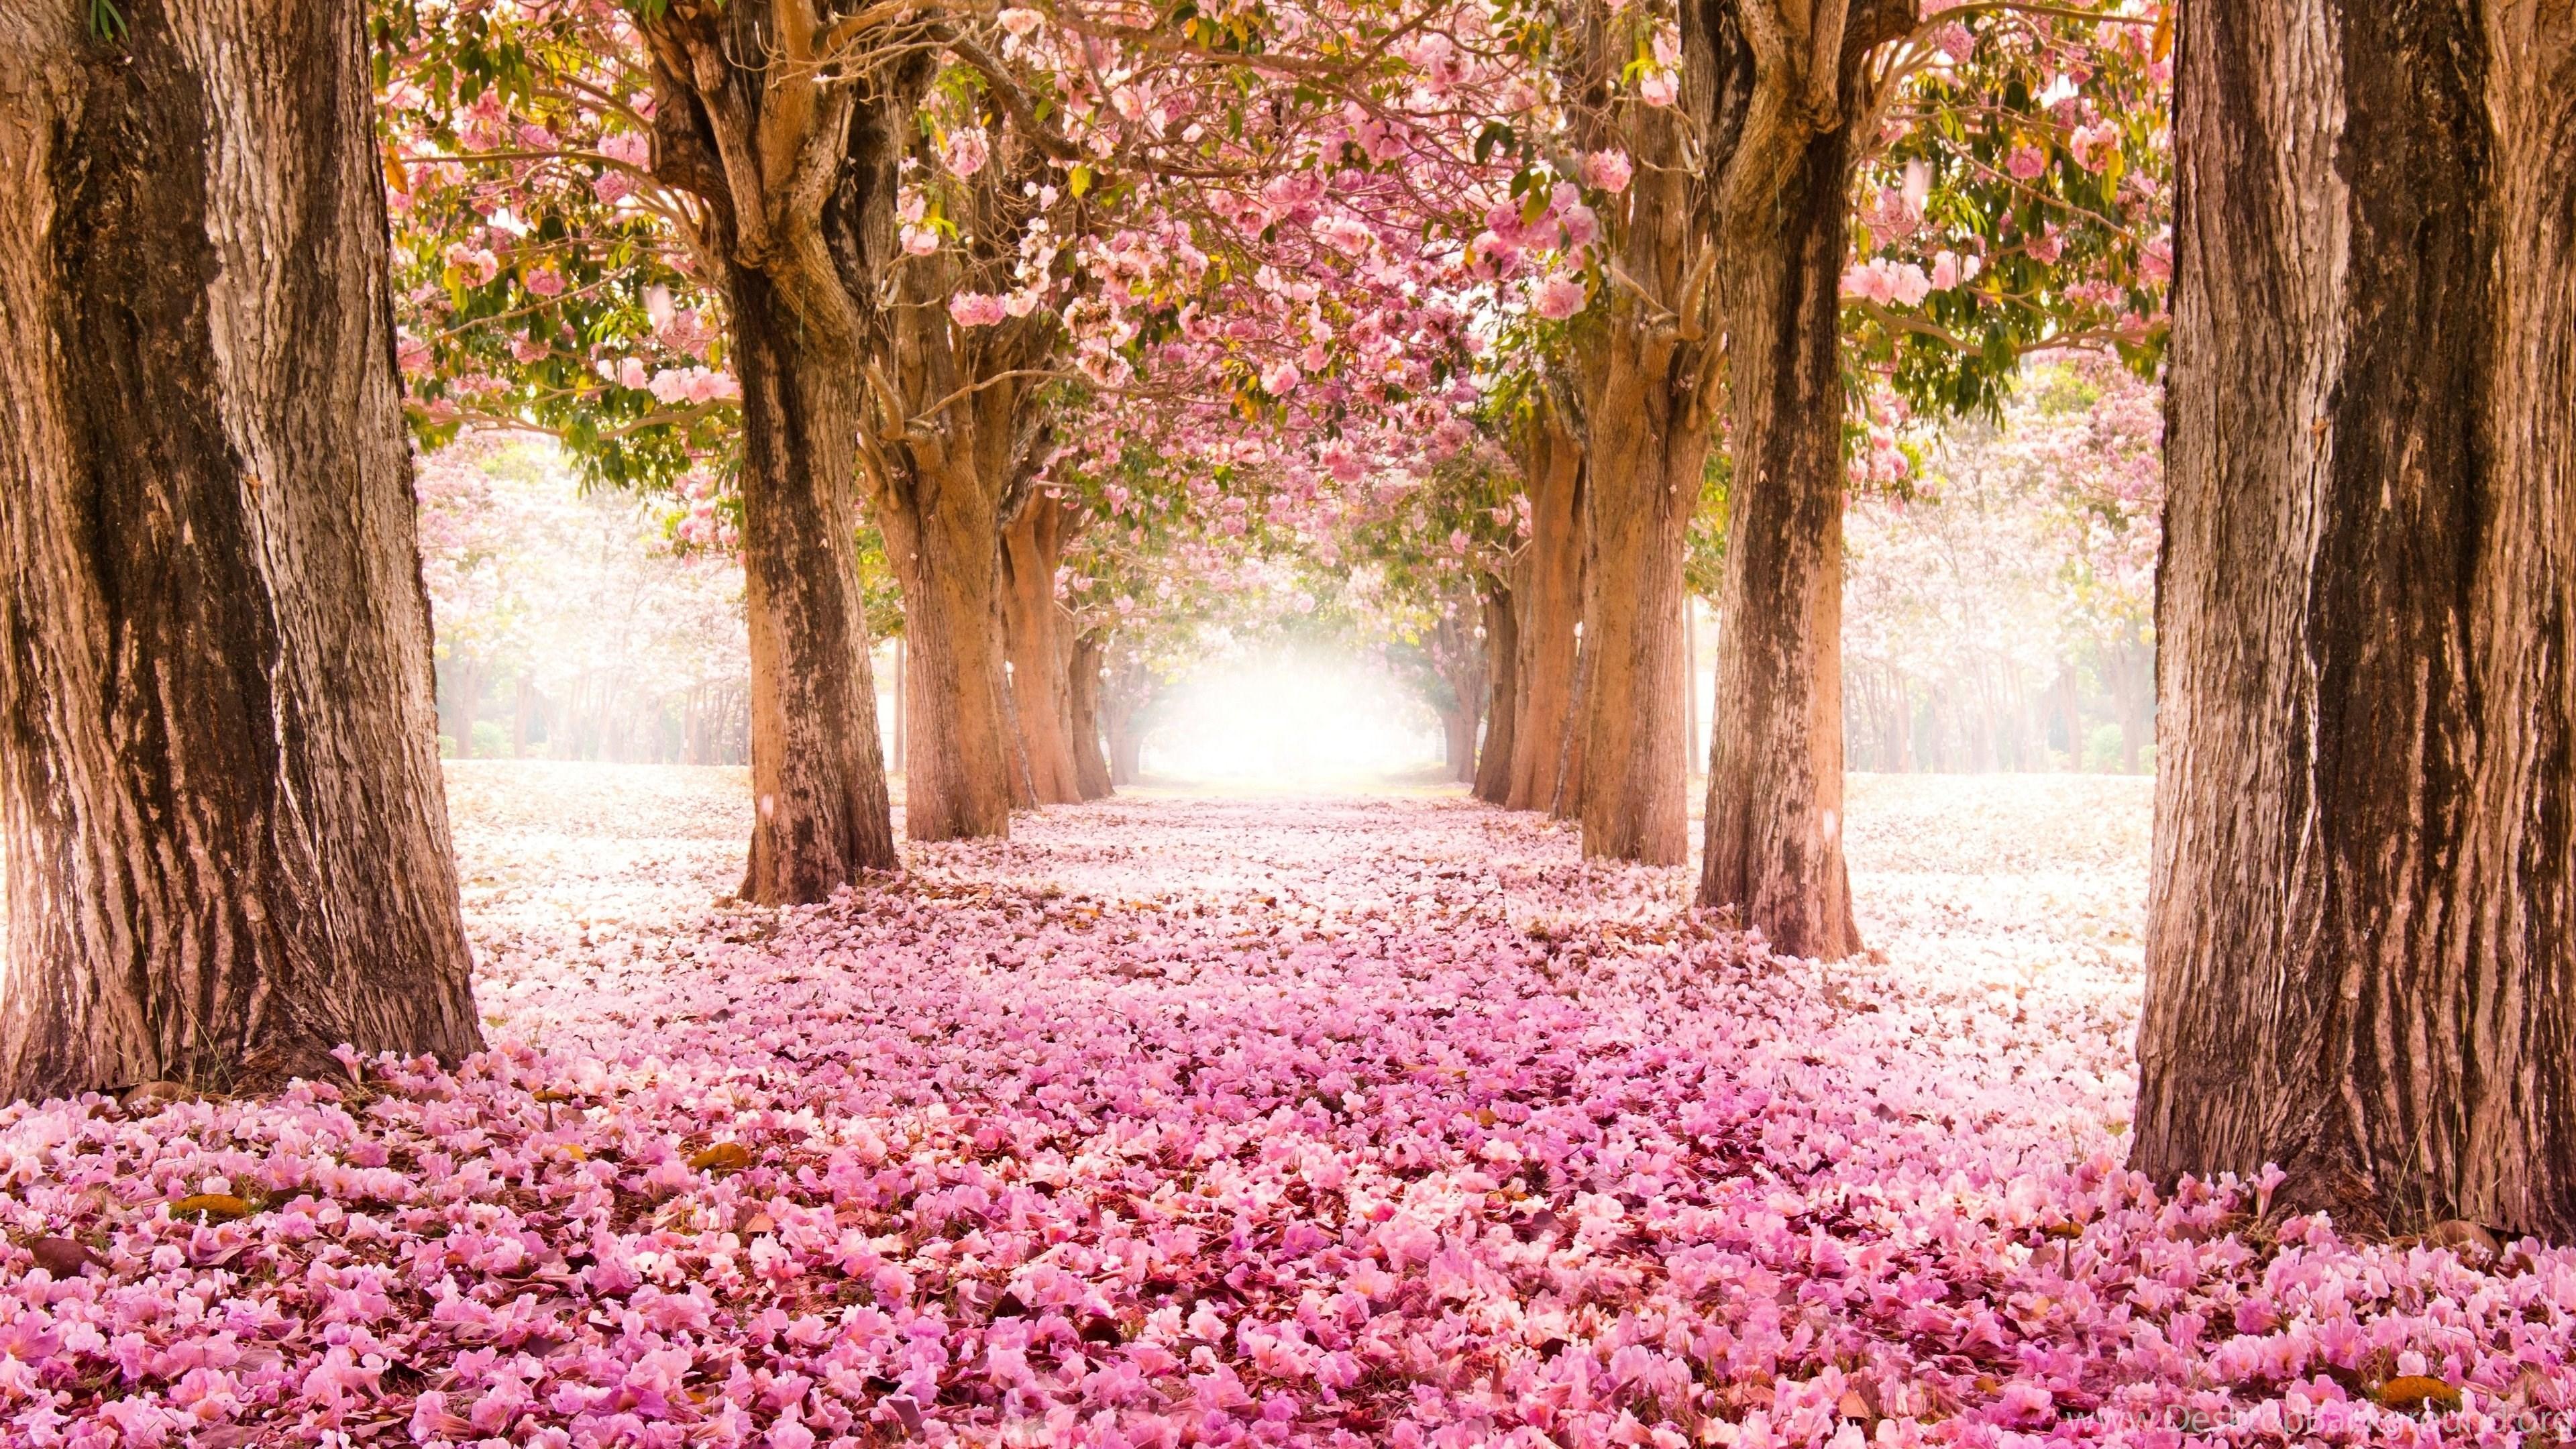 Spring In Japan Cherry Blossom 4k Ultra HD Wallpaper For Desktop